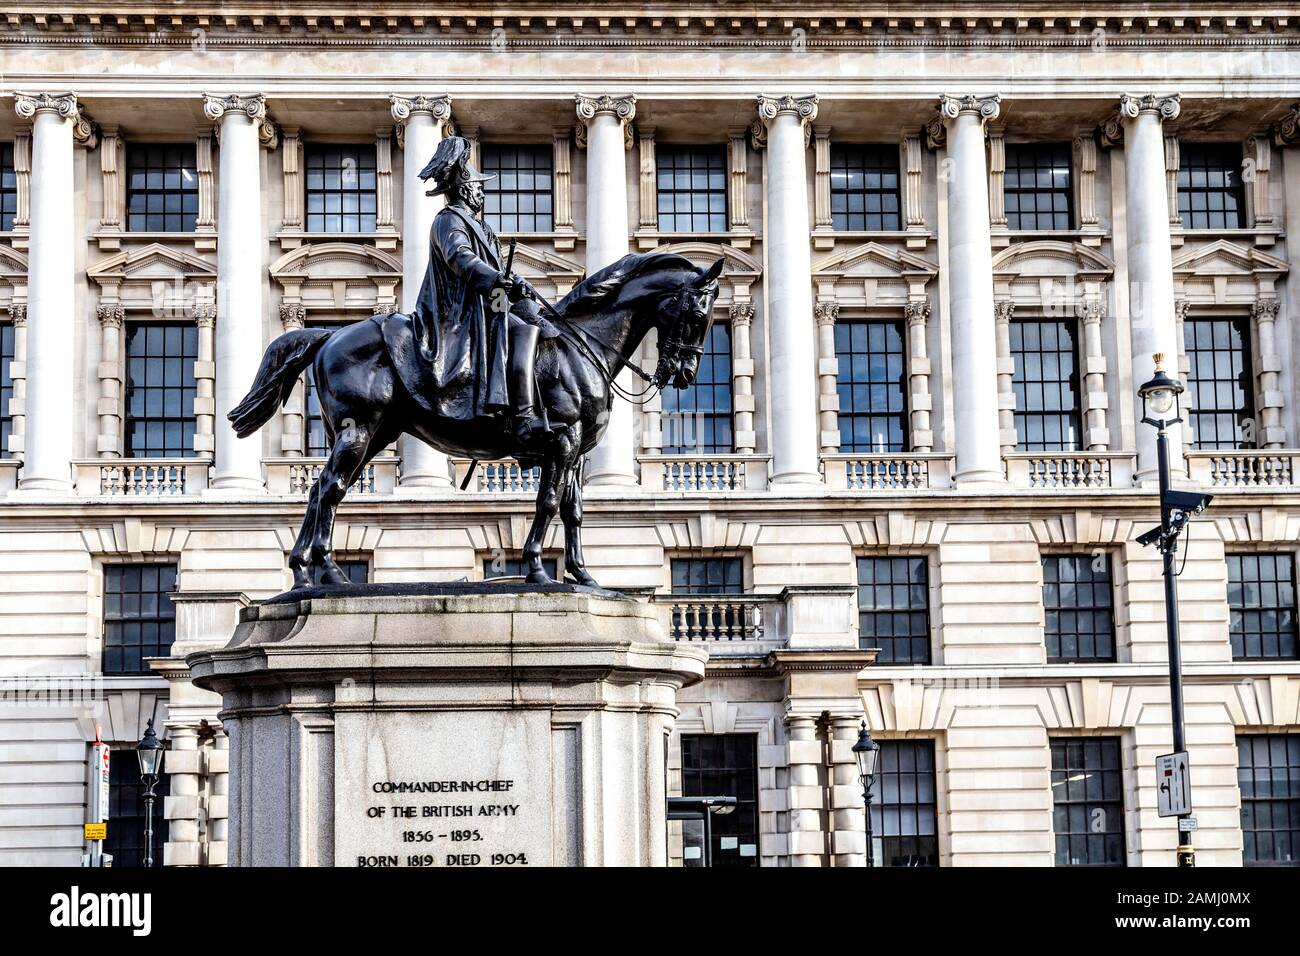 Statua equestre di George, Duca di Cambridge, Comandante in Capo dell'Esercito britannico 1856 - 1895, Londra, Regno Unito Foto Stock